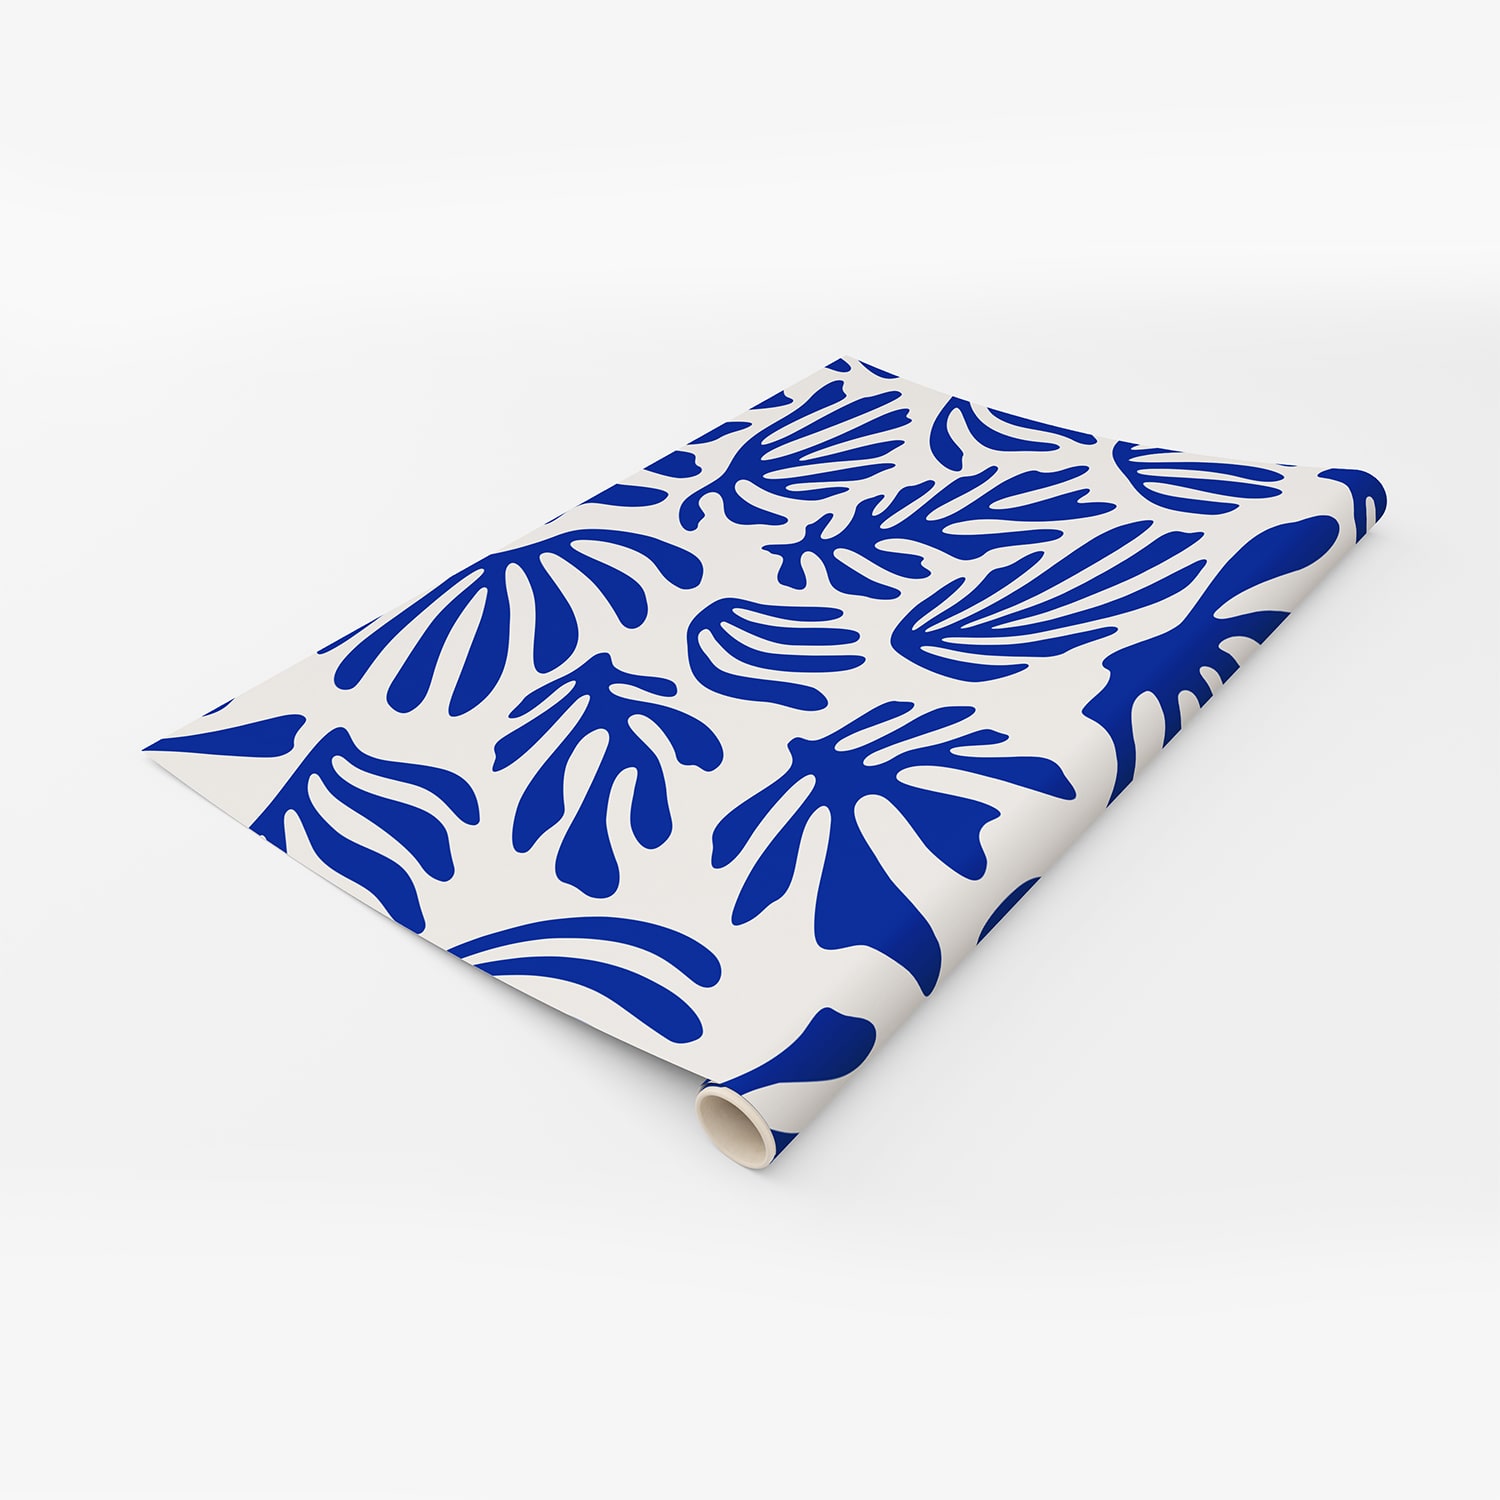 PP99-rouleau-papier-peint-adhesif-decoratif-revetement-vinyle-motifs-inspiré-style-Matisse-plantes-renovation-meuble-mur-min